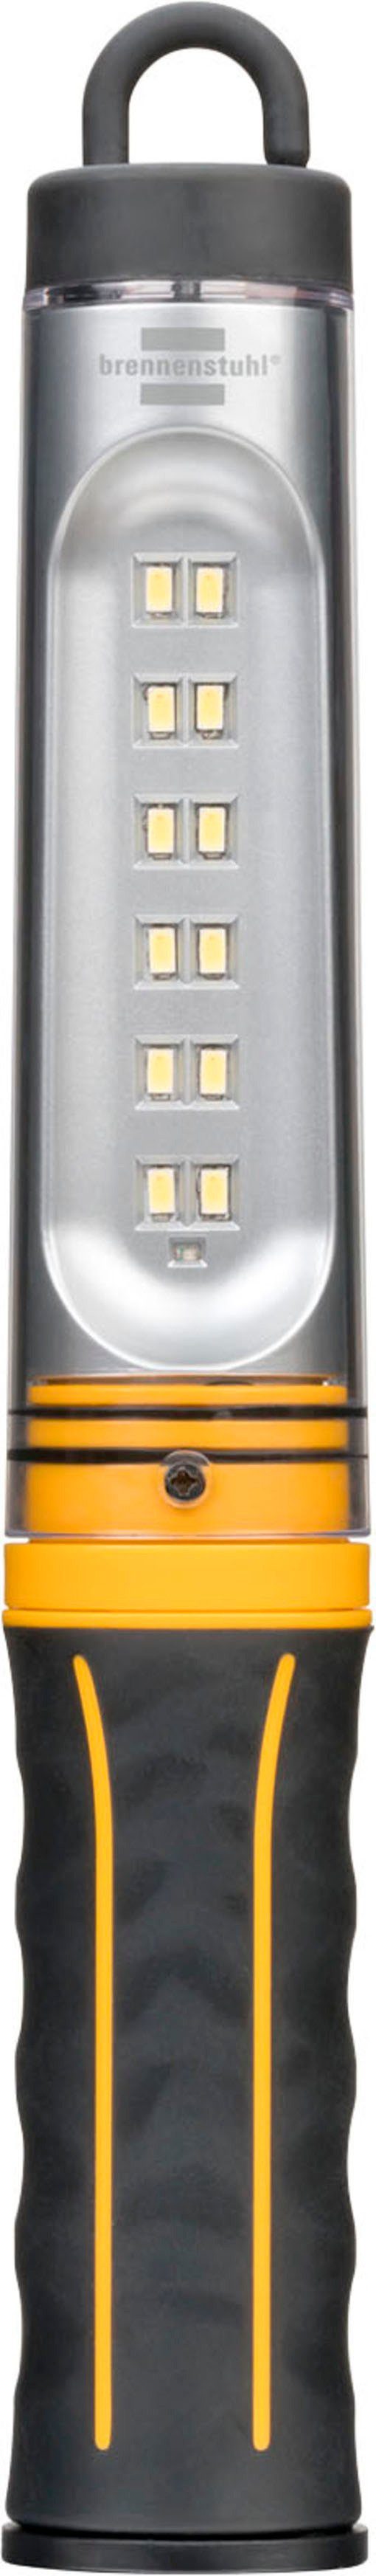 WL A, Brennenstuhl Integrierter mit Handleuchte integriertem USB-Kabel, 500 Akku Ah) (3,7 V/2,2 und Li-Ion Akku